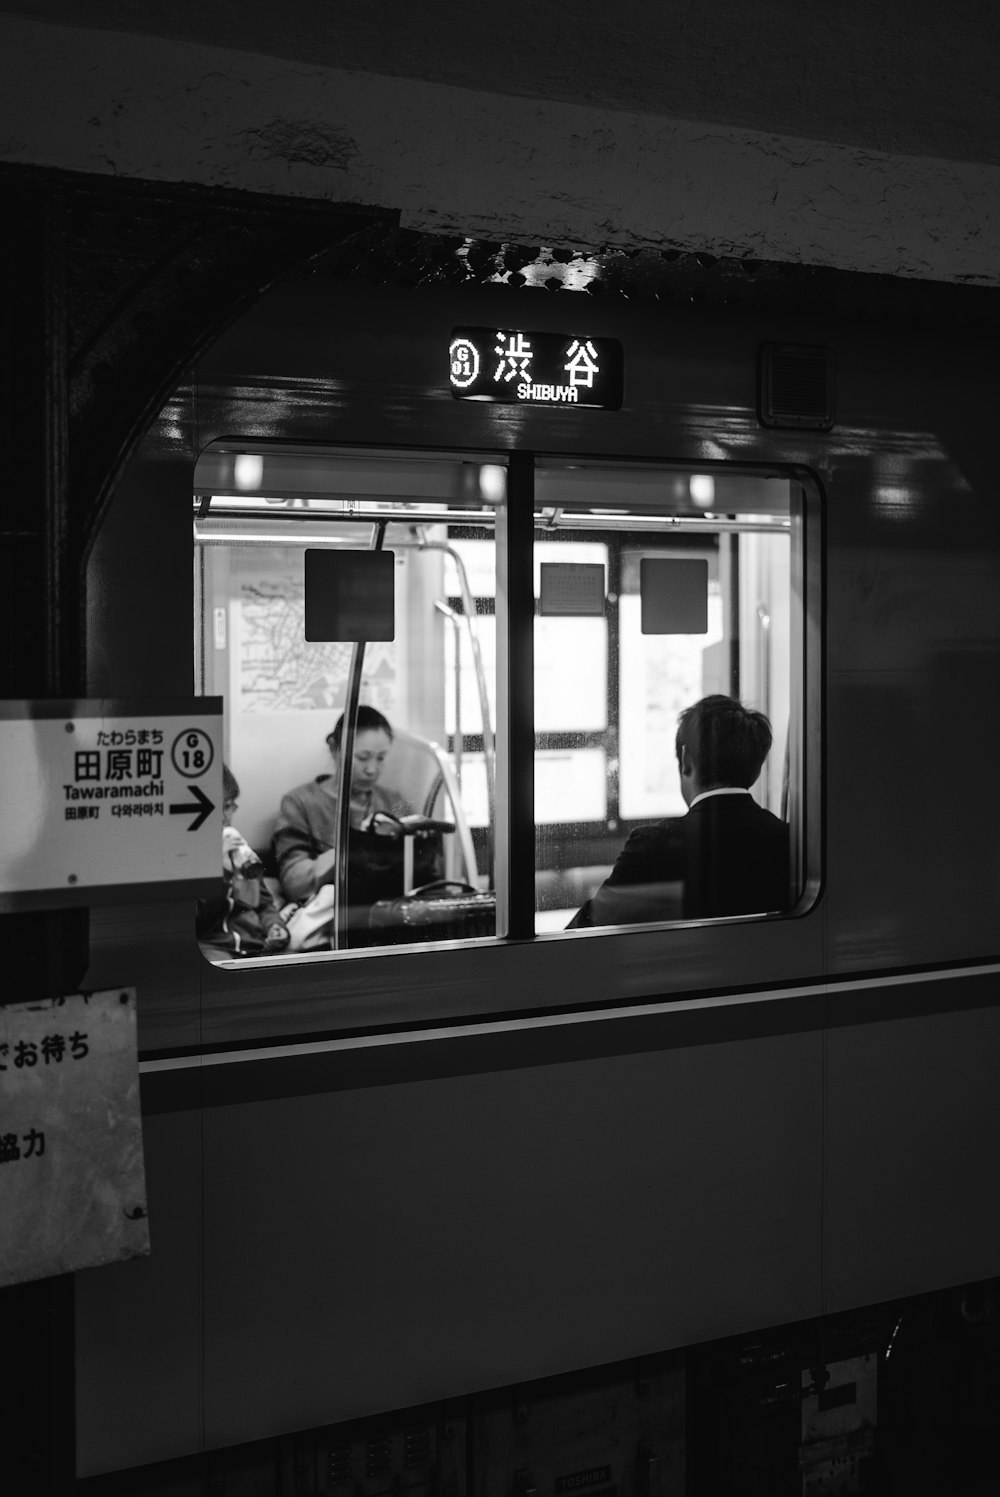 電車に座っている2人のグレースケール写真